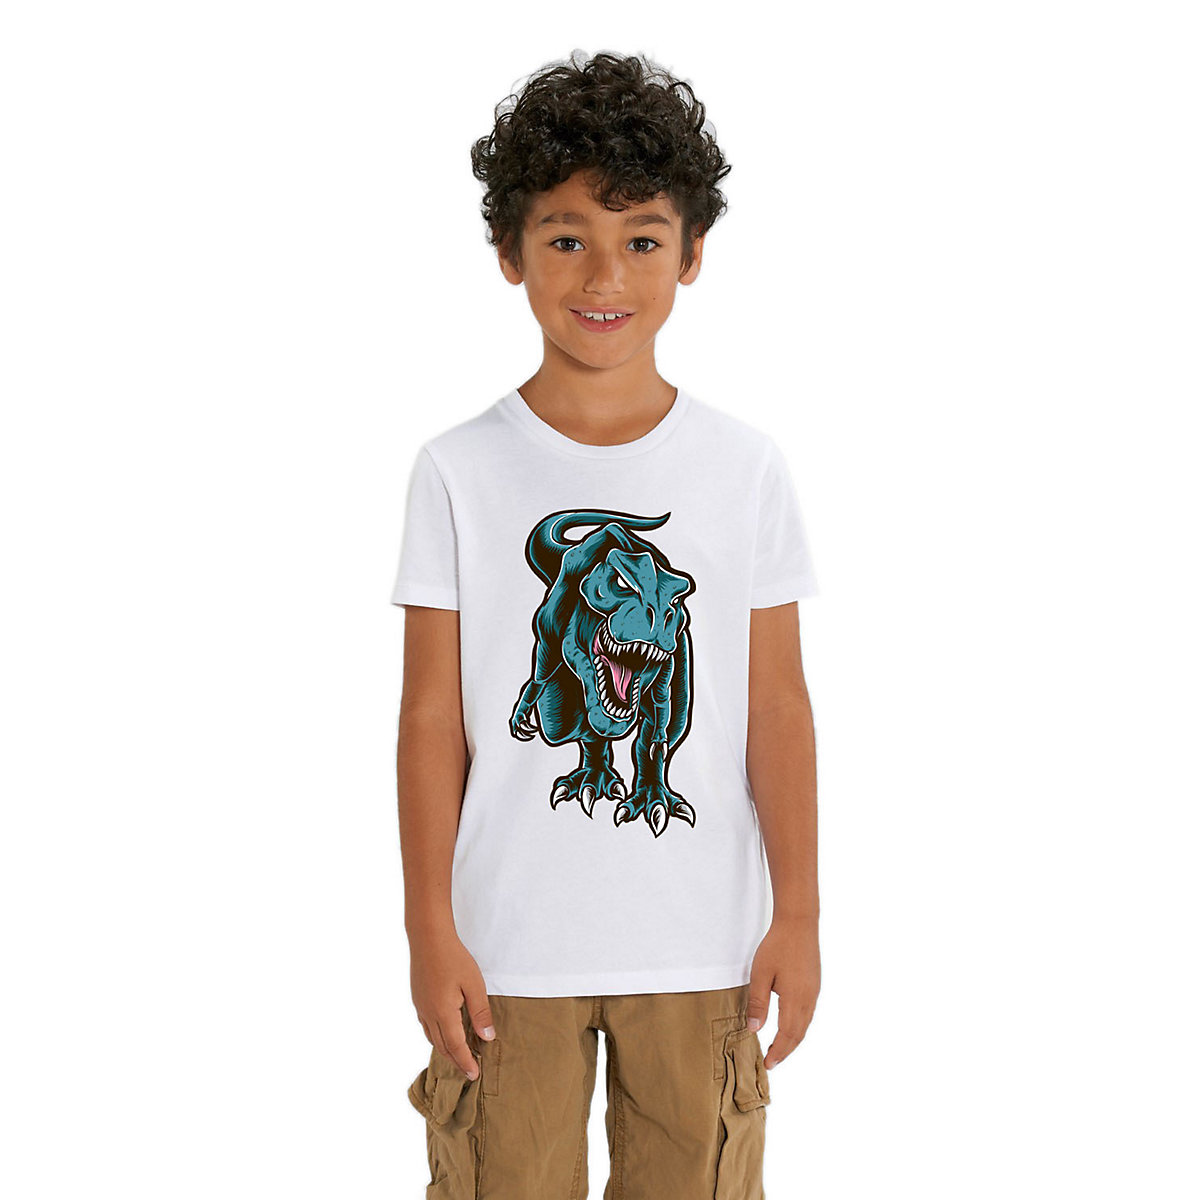 Hilltop Kinder T-Shirt T-Rex Dinosaurier für Kinder weiß